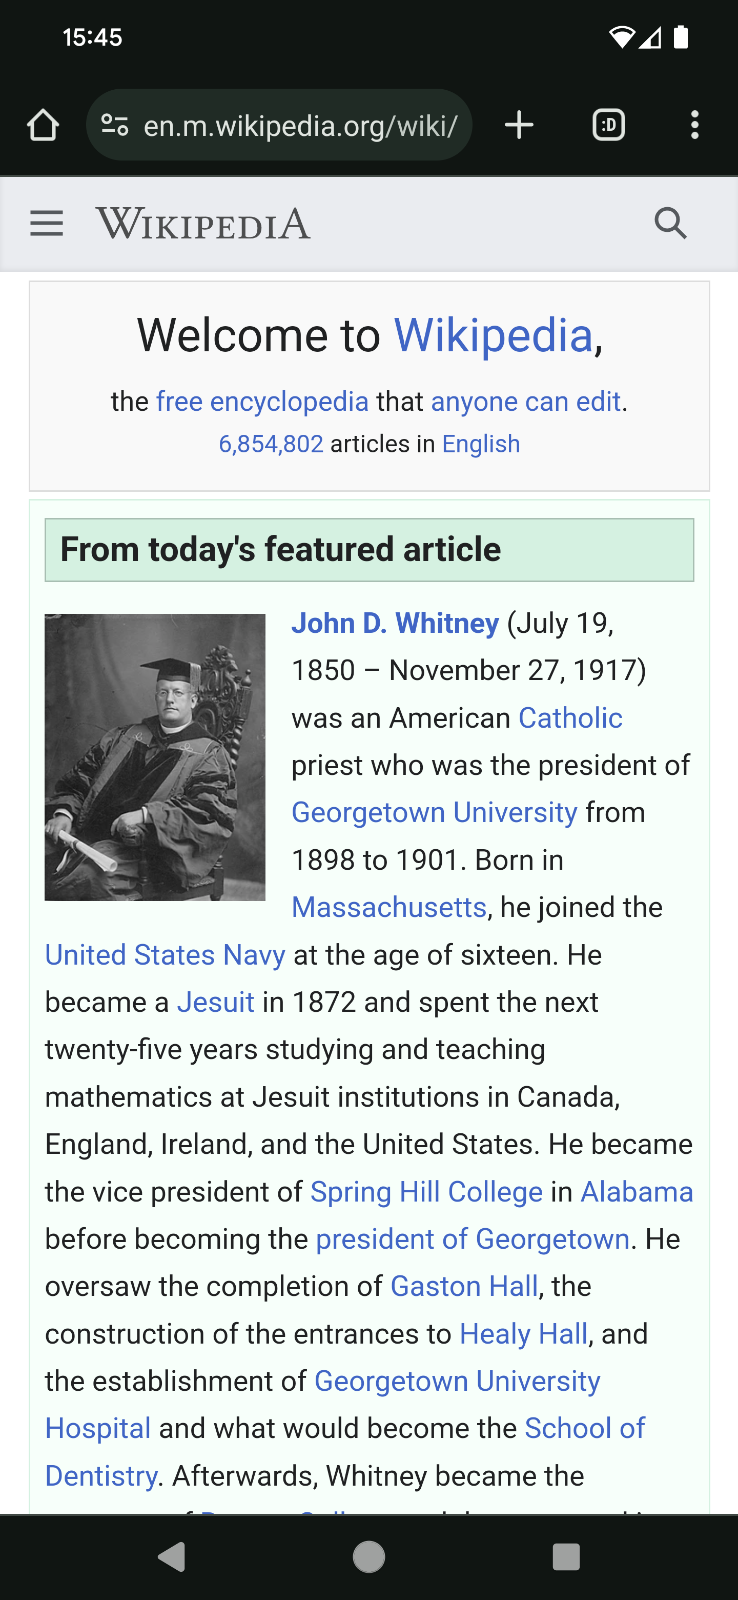 אתר ויקיפדיה בנייד.